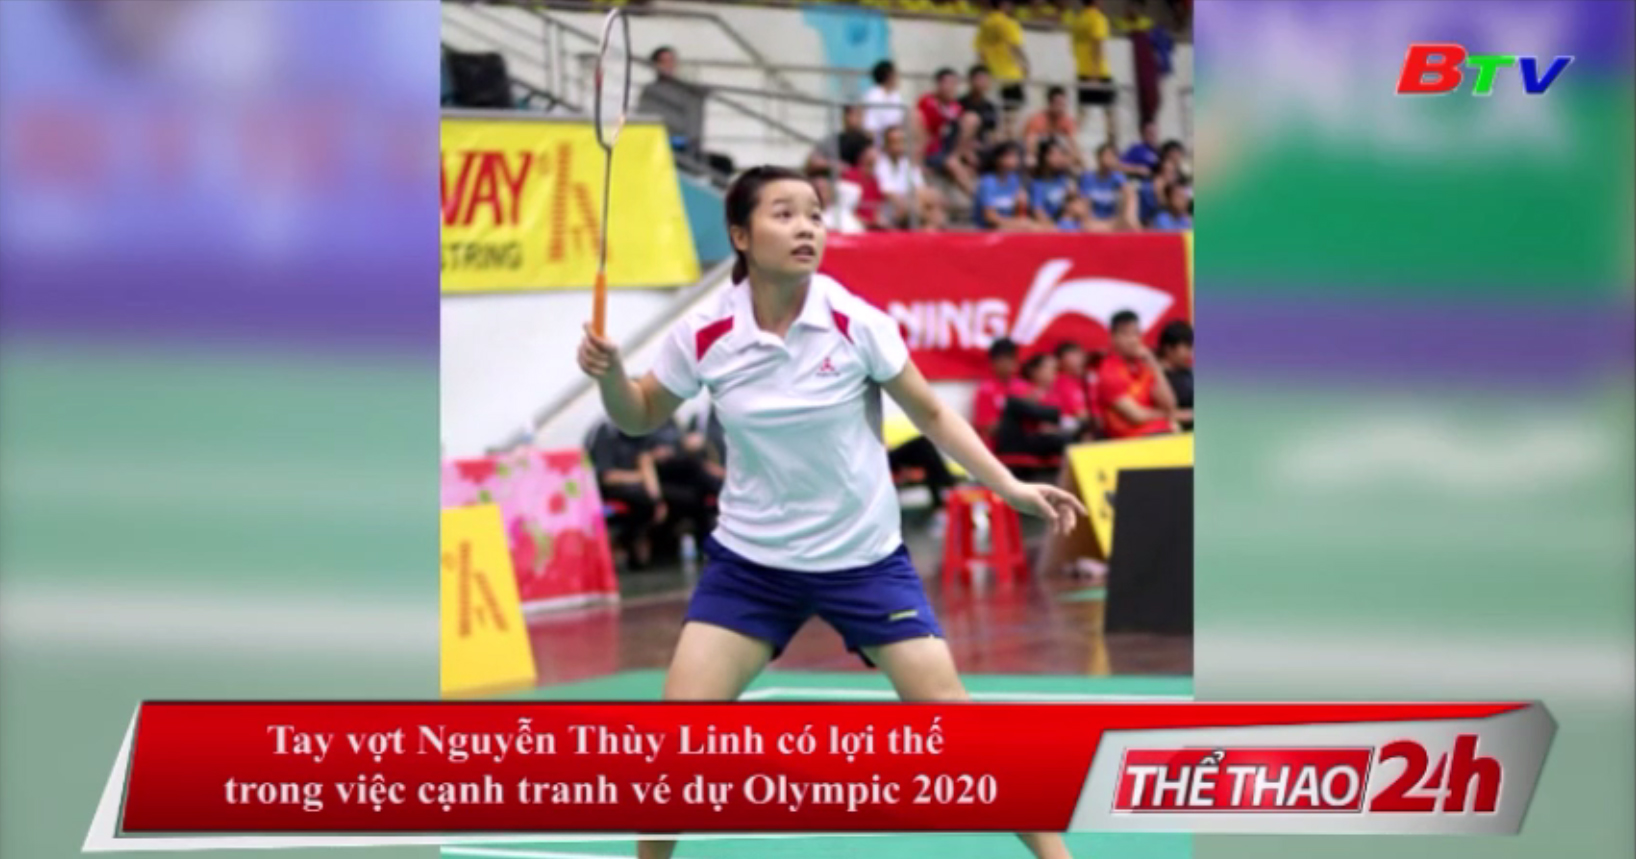 Tay vợt Nguyễn Thùy Linh có lợi thế trong việc cạnh tranh vé dự Olympic 2020